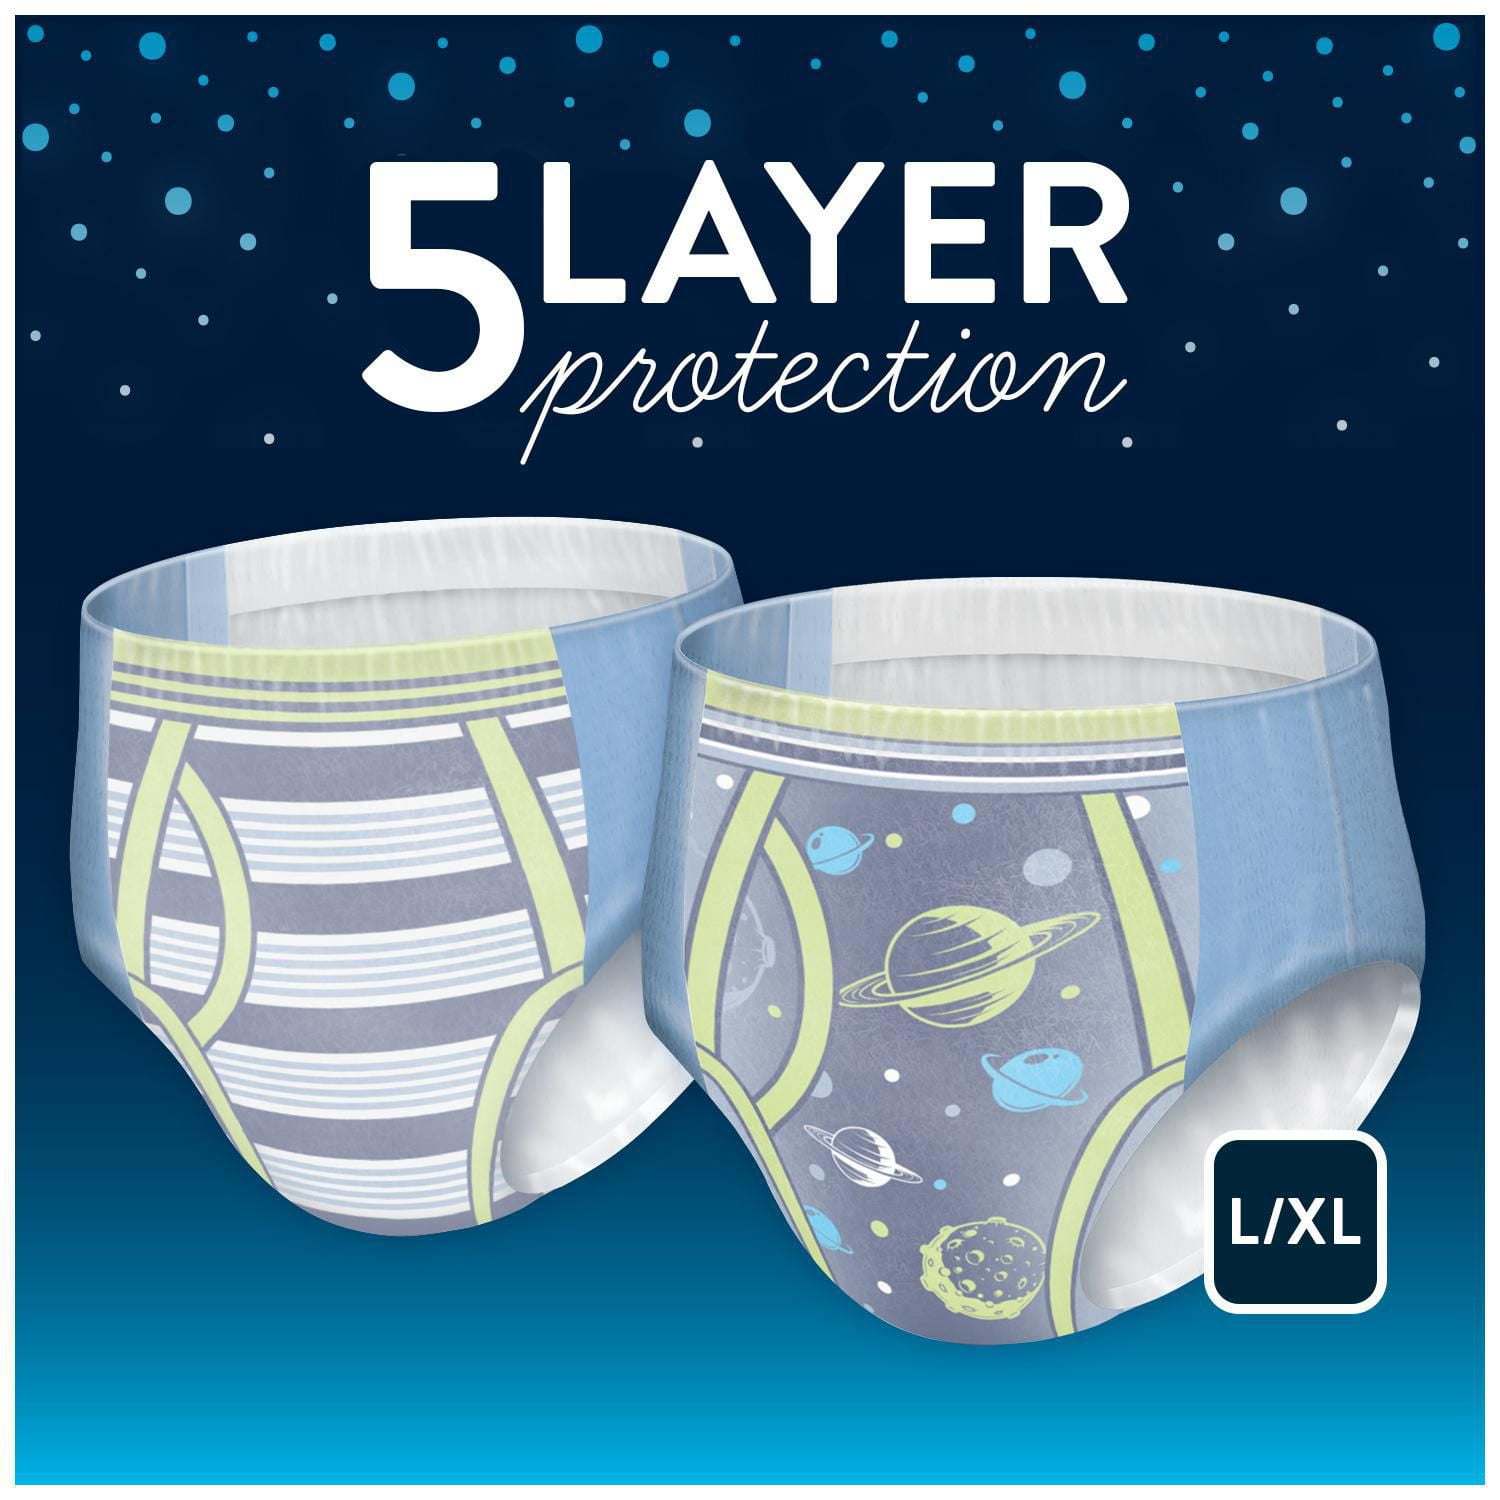 Goodnites Nighttime Bedwetting Underwear for Boys, L/XL, 11 Ct 